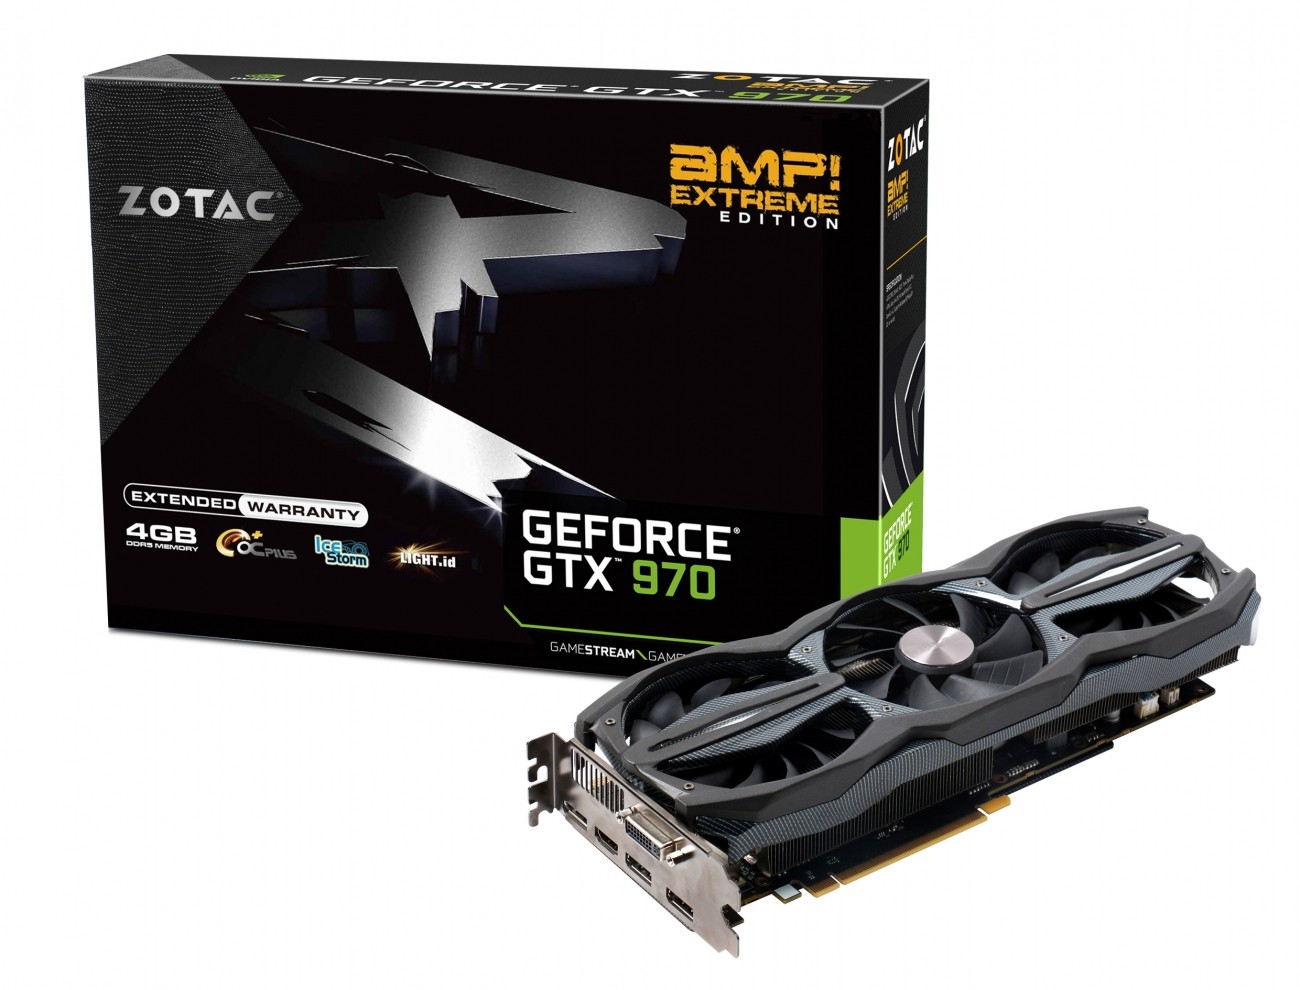 slew of new GeForce GTX 900 series GPUs 